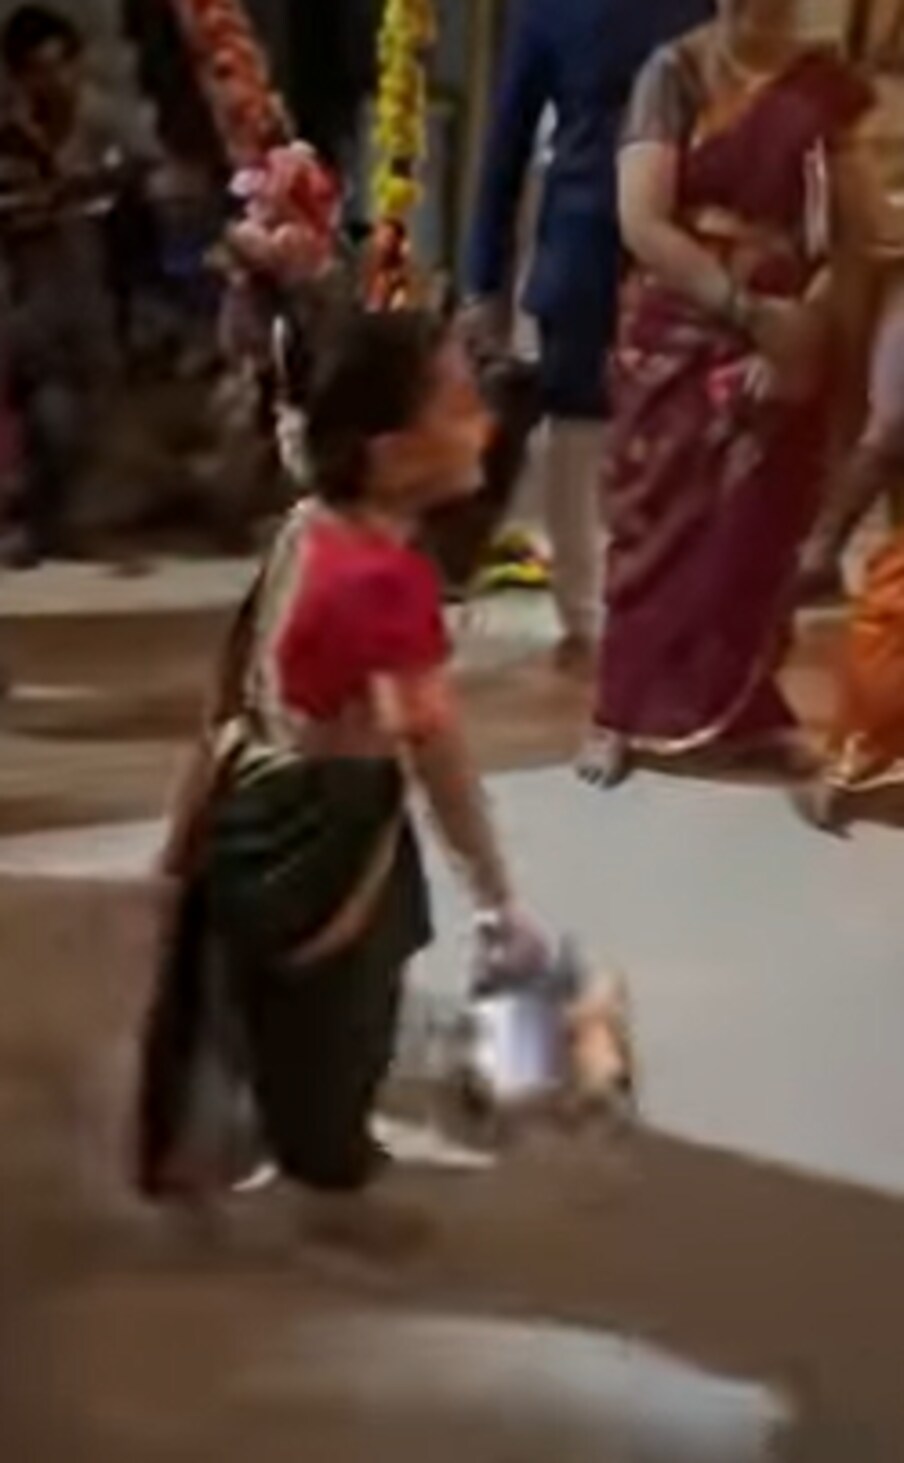  चिमुकल्या परीचा मंगळागौर खेळतानाच एक व्हिडीओ सोशल मीडियावर व्हायरल होत आहे. यामधील परीचा लुक आणि क्युट डान्स चाहत्यांना तिच्या प्रेमात पाडतोय.